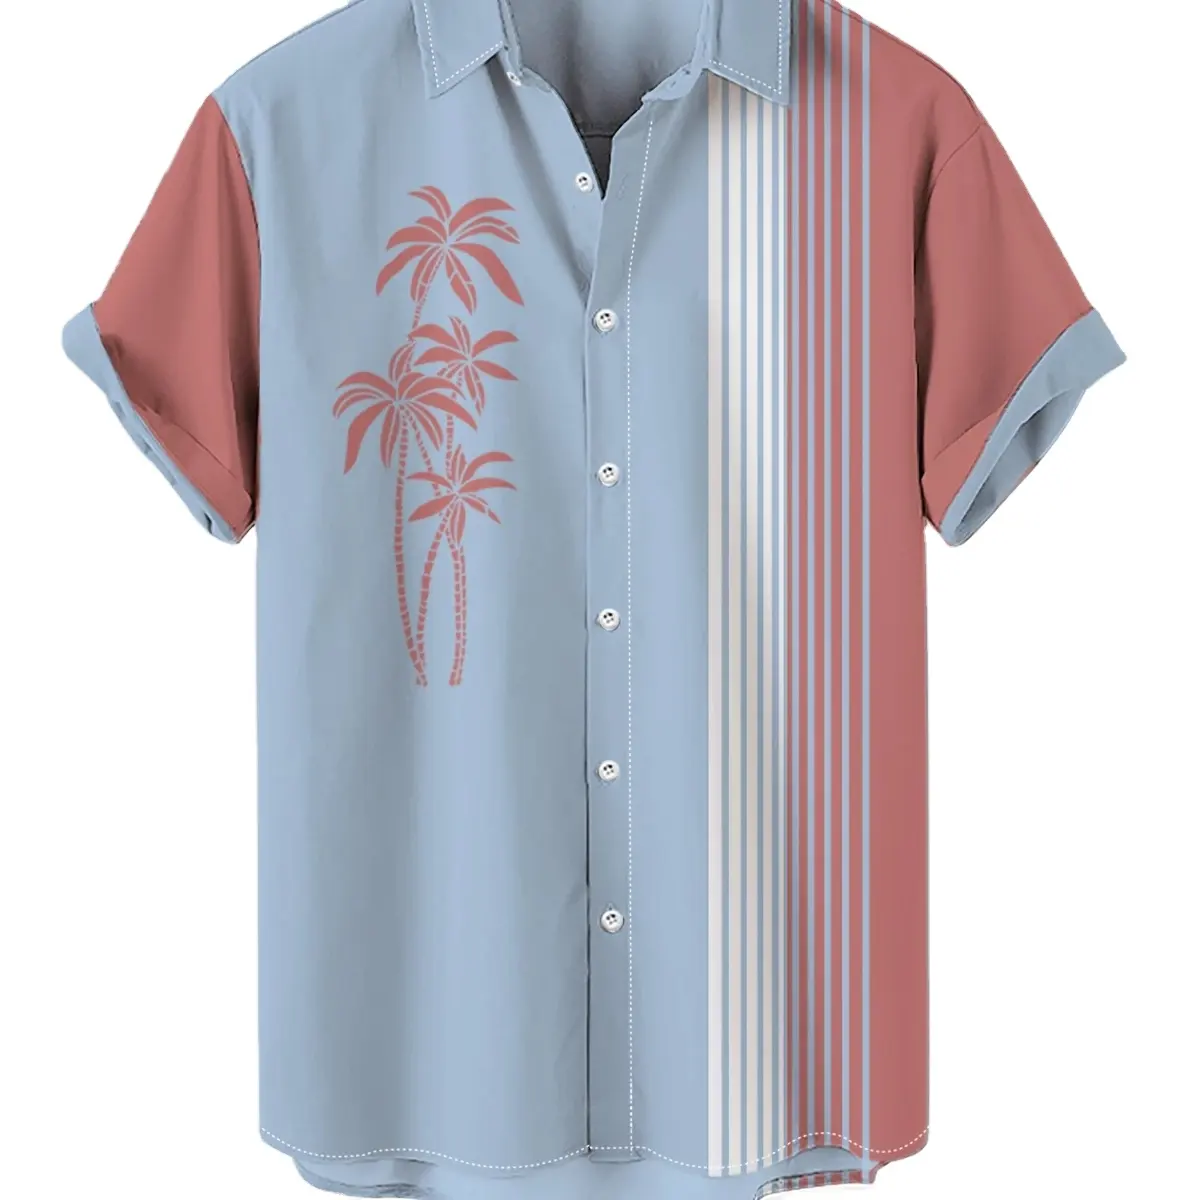 Camiseta personalizada de manga corta para hombre, Camisa estampada de playa para vacaciones de verano